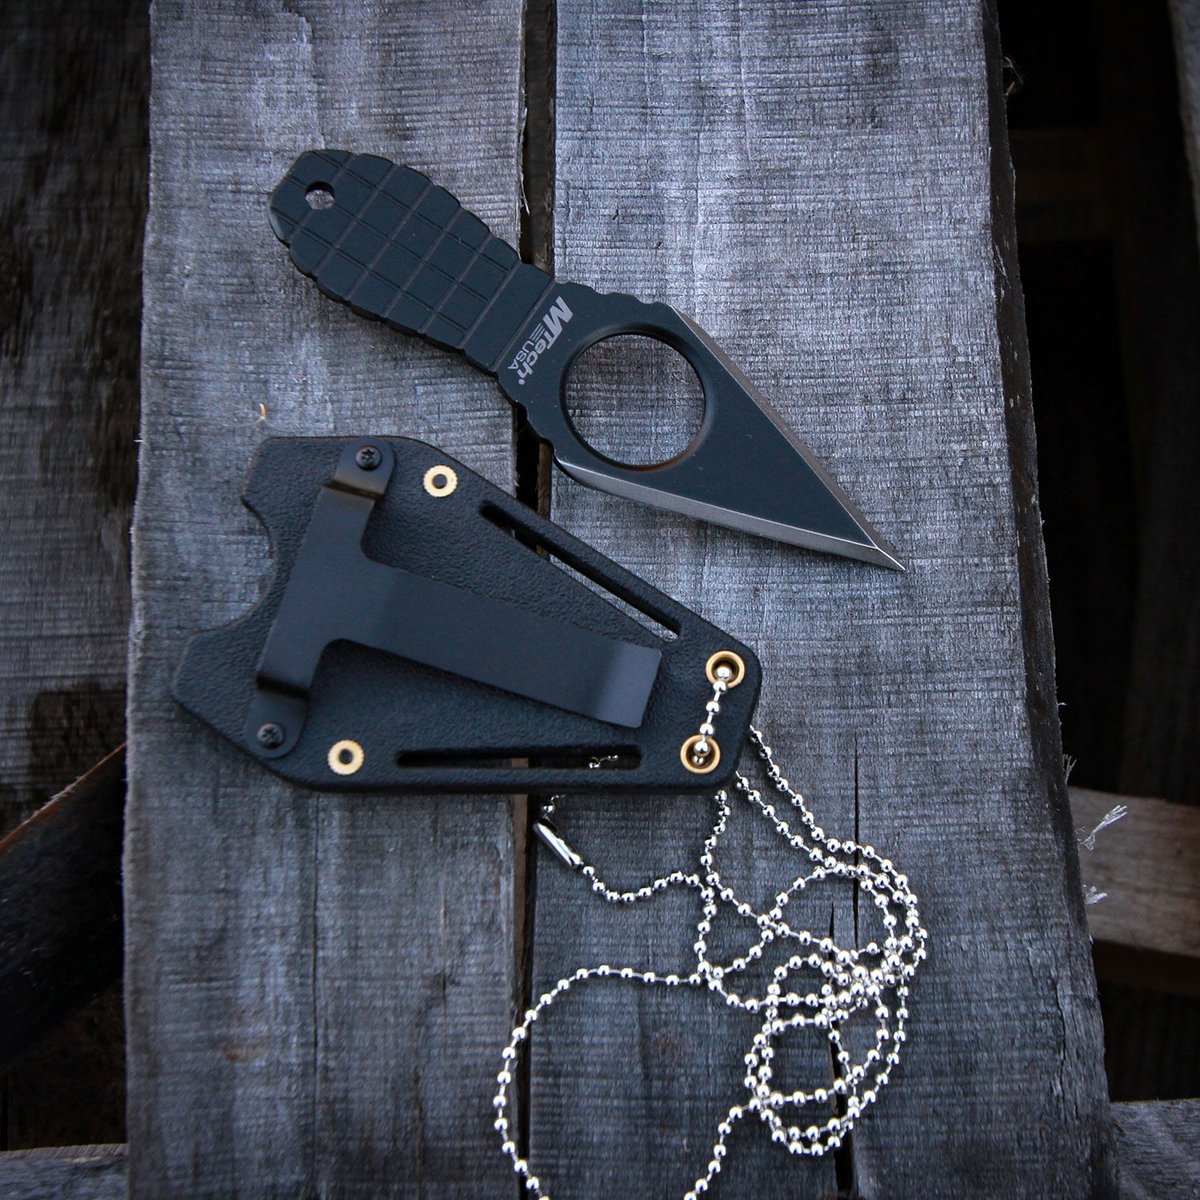 Grenade Neck Knife【M Tech USA】 ZASSENHAUS cof...